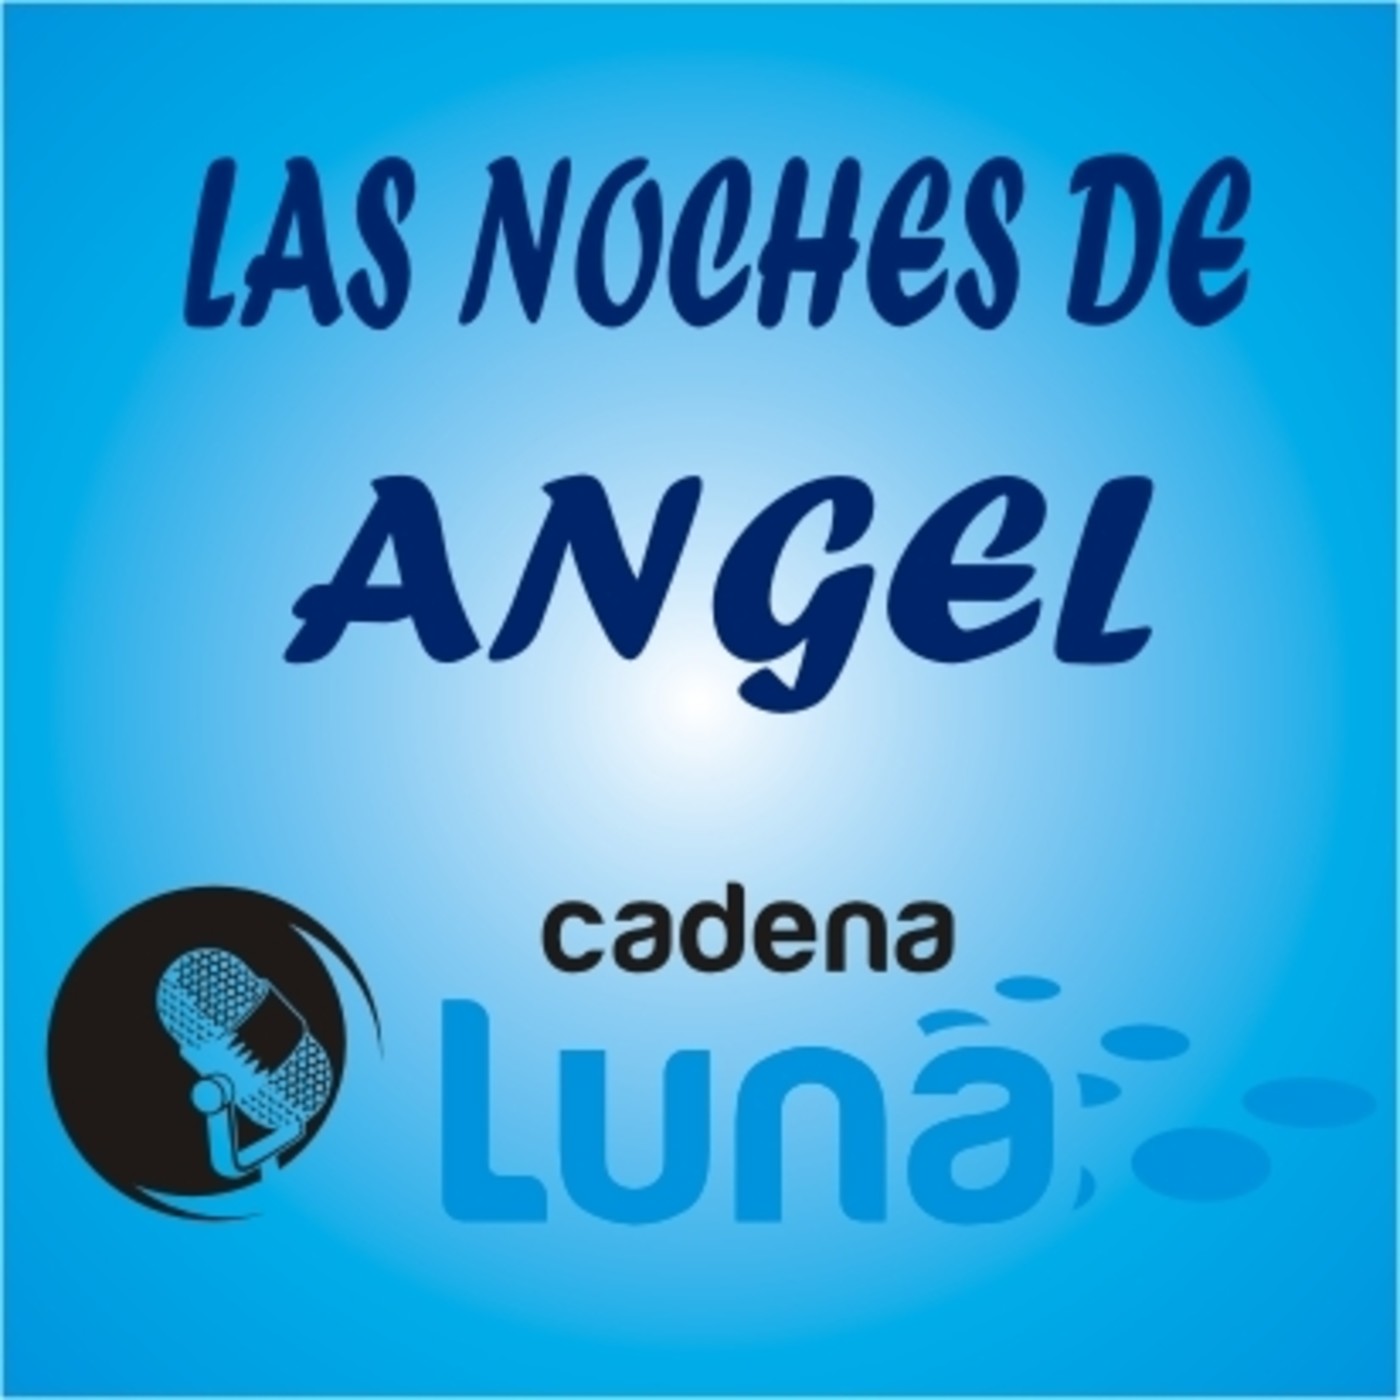 Las noches de Angel cadena luna - 02 - 05 - 24